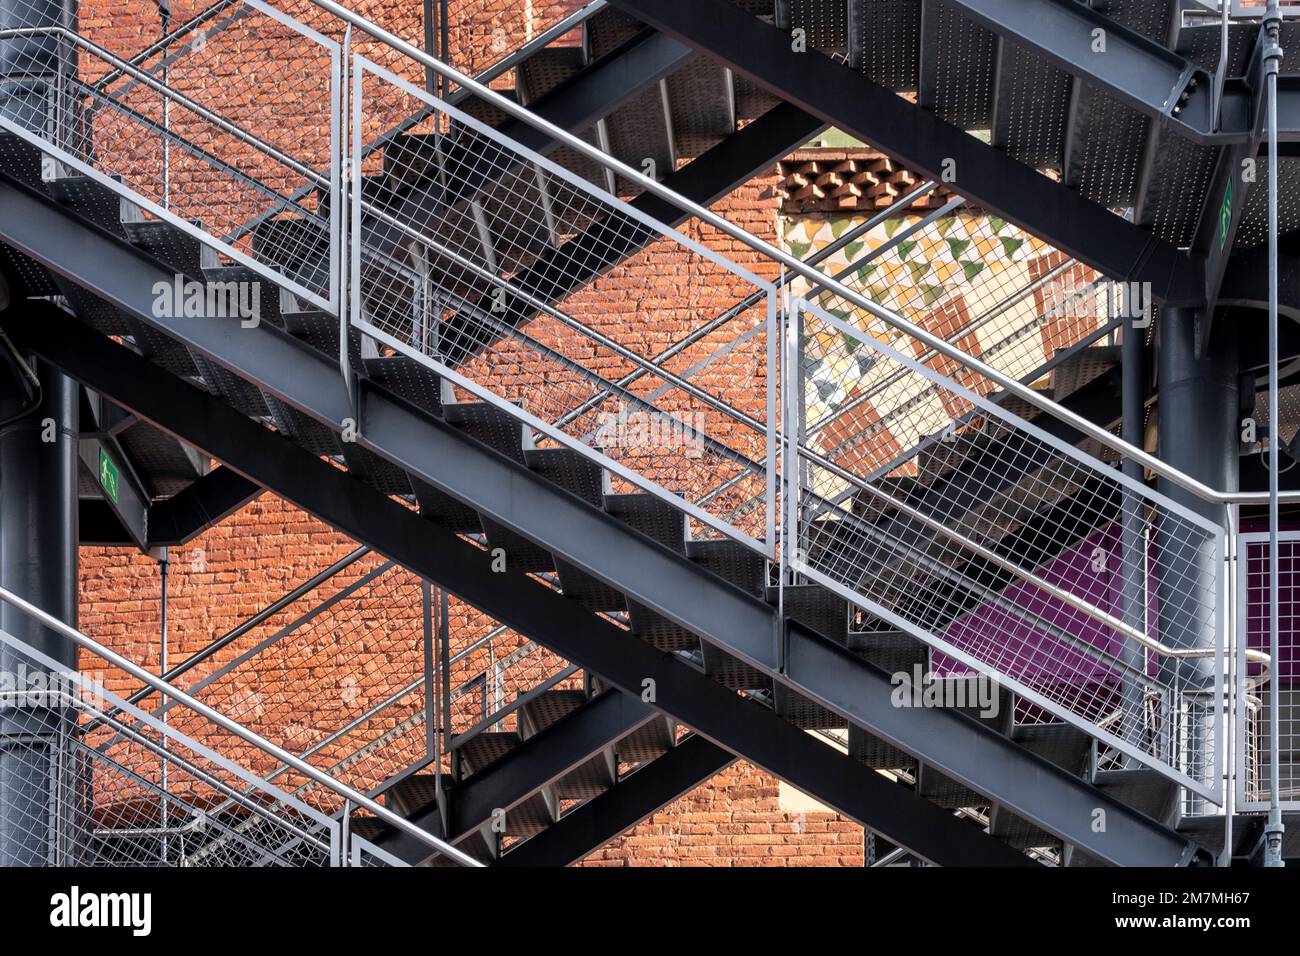 Escaliers Et échelle De Sortie De Secours, En Métal, Sur Un Immeuble De  Brique Résidentiel Moderne Nord-américain Typique De Mont Image stock -  Image du nordique, américain: 140844923